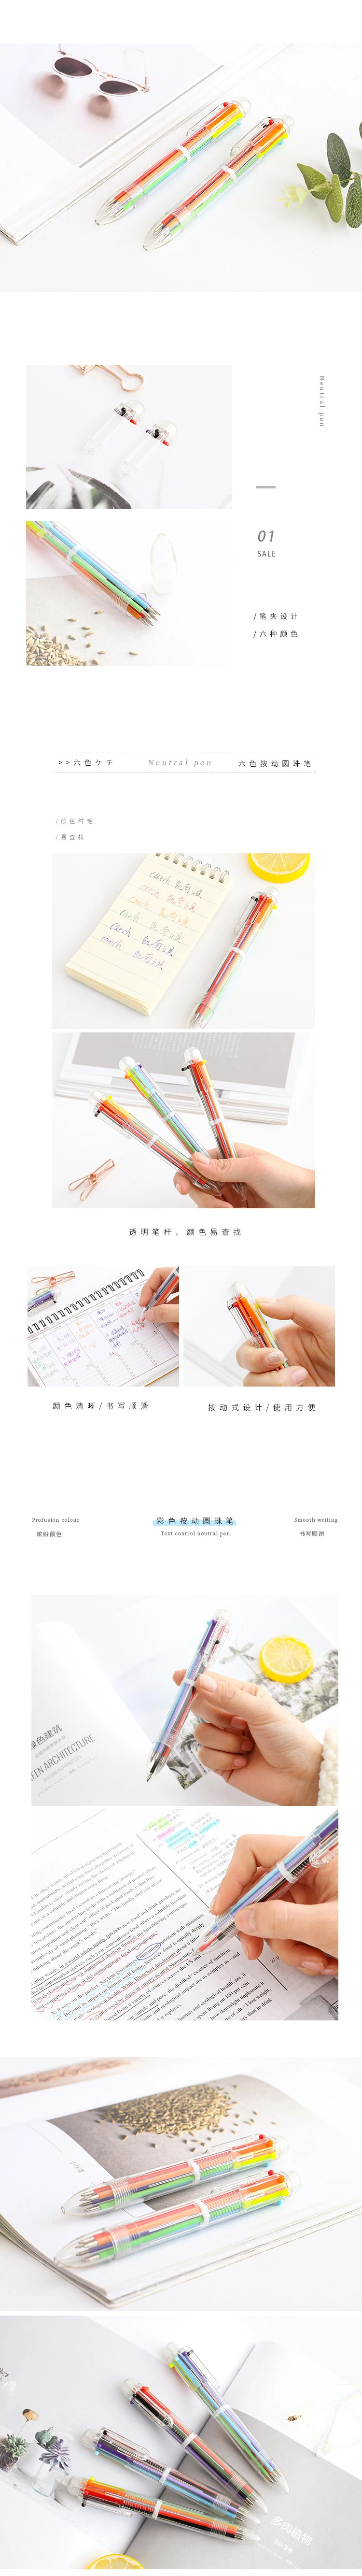 TUNACOCO милые разноцветные шариковые ручки шесть цветов картридж Ofiice школьные принадлежности bb1710088